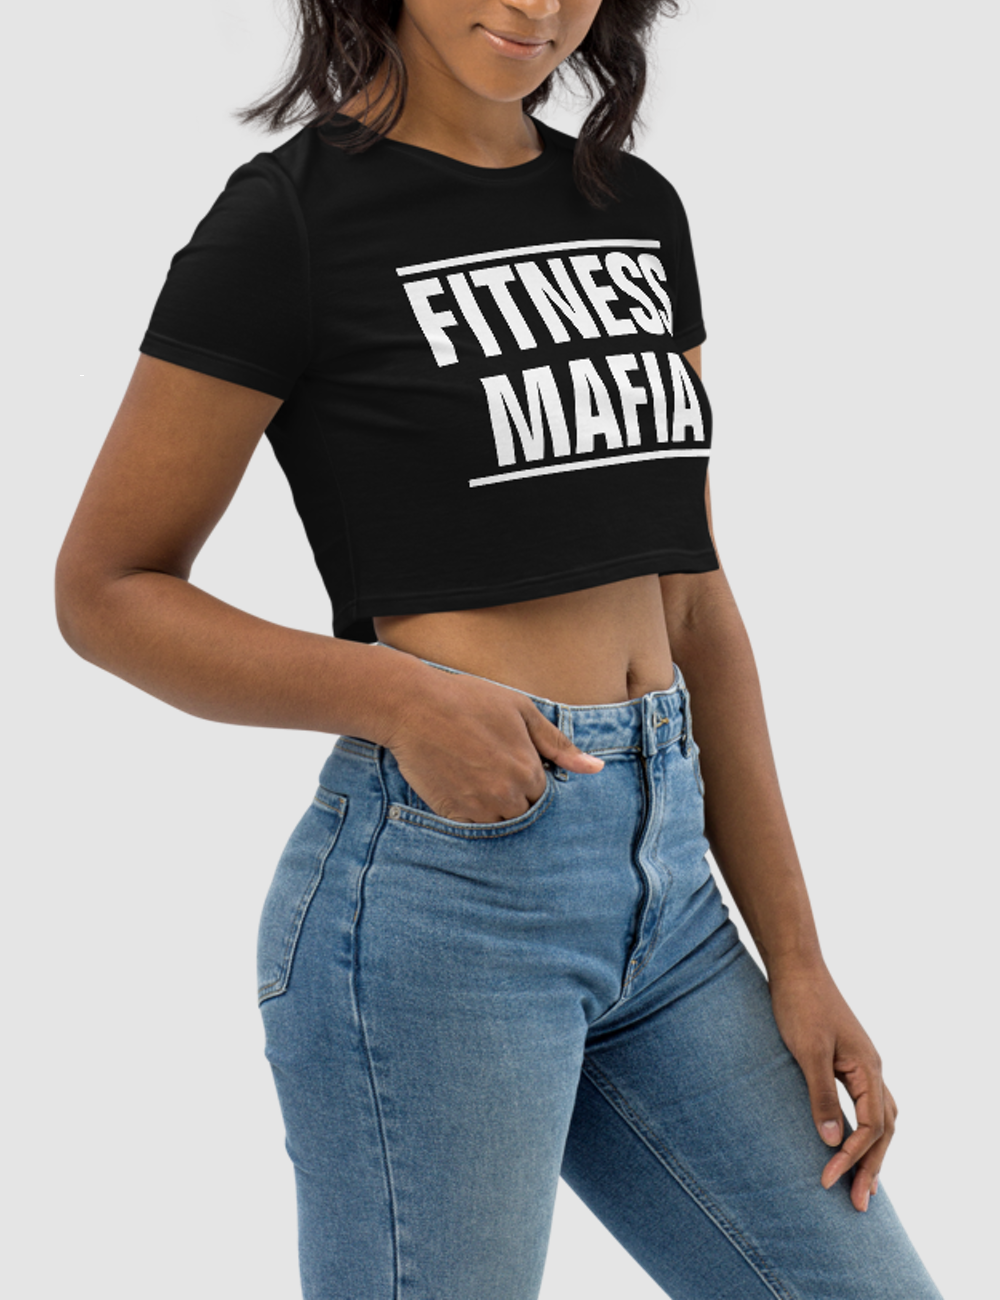 Fitness Mafia | Women's Crop Top T-Shirt OniTakai